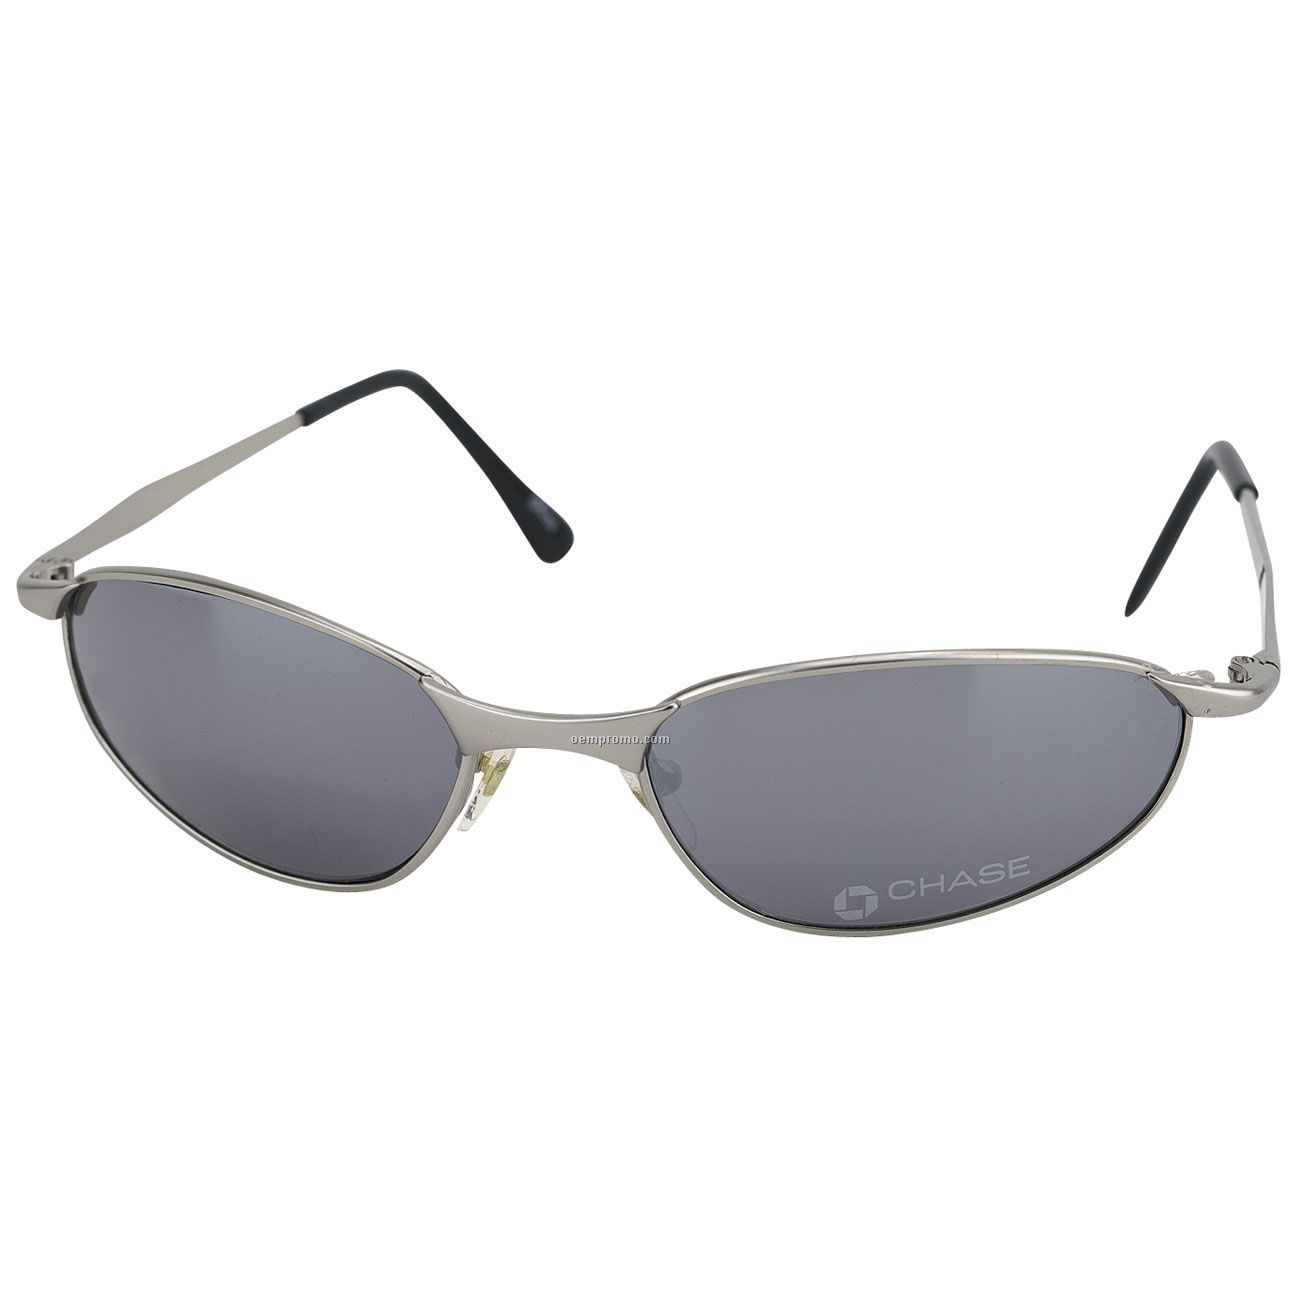 Aluminum Metal Wrap Frame Sunglasses W/ Smoke Lens